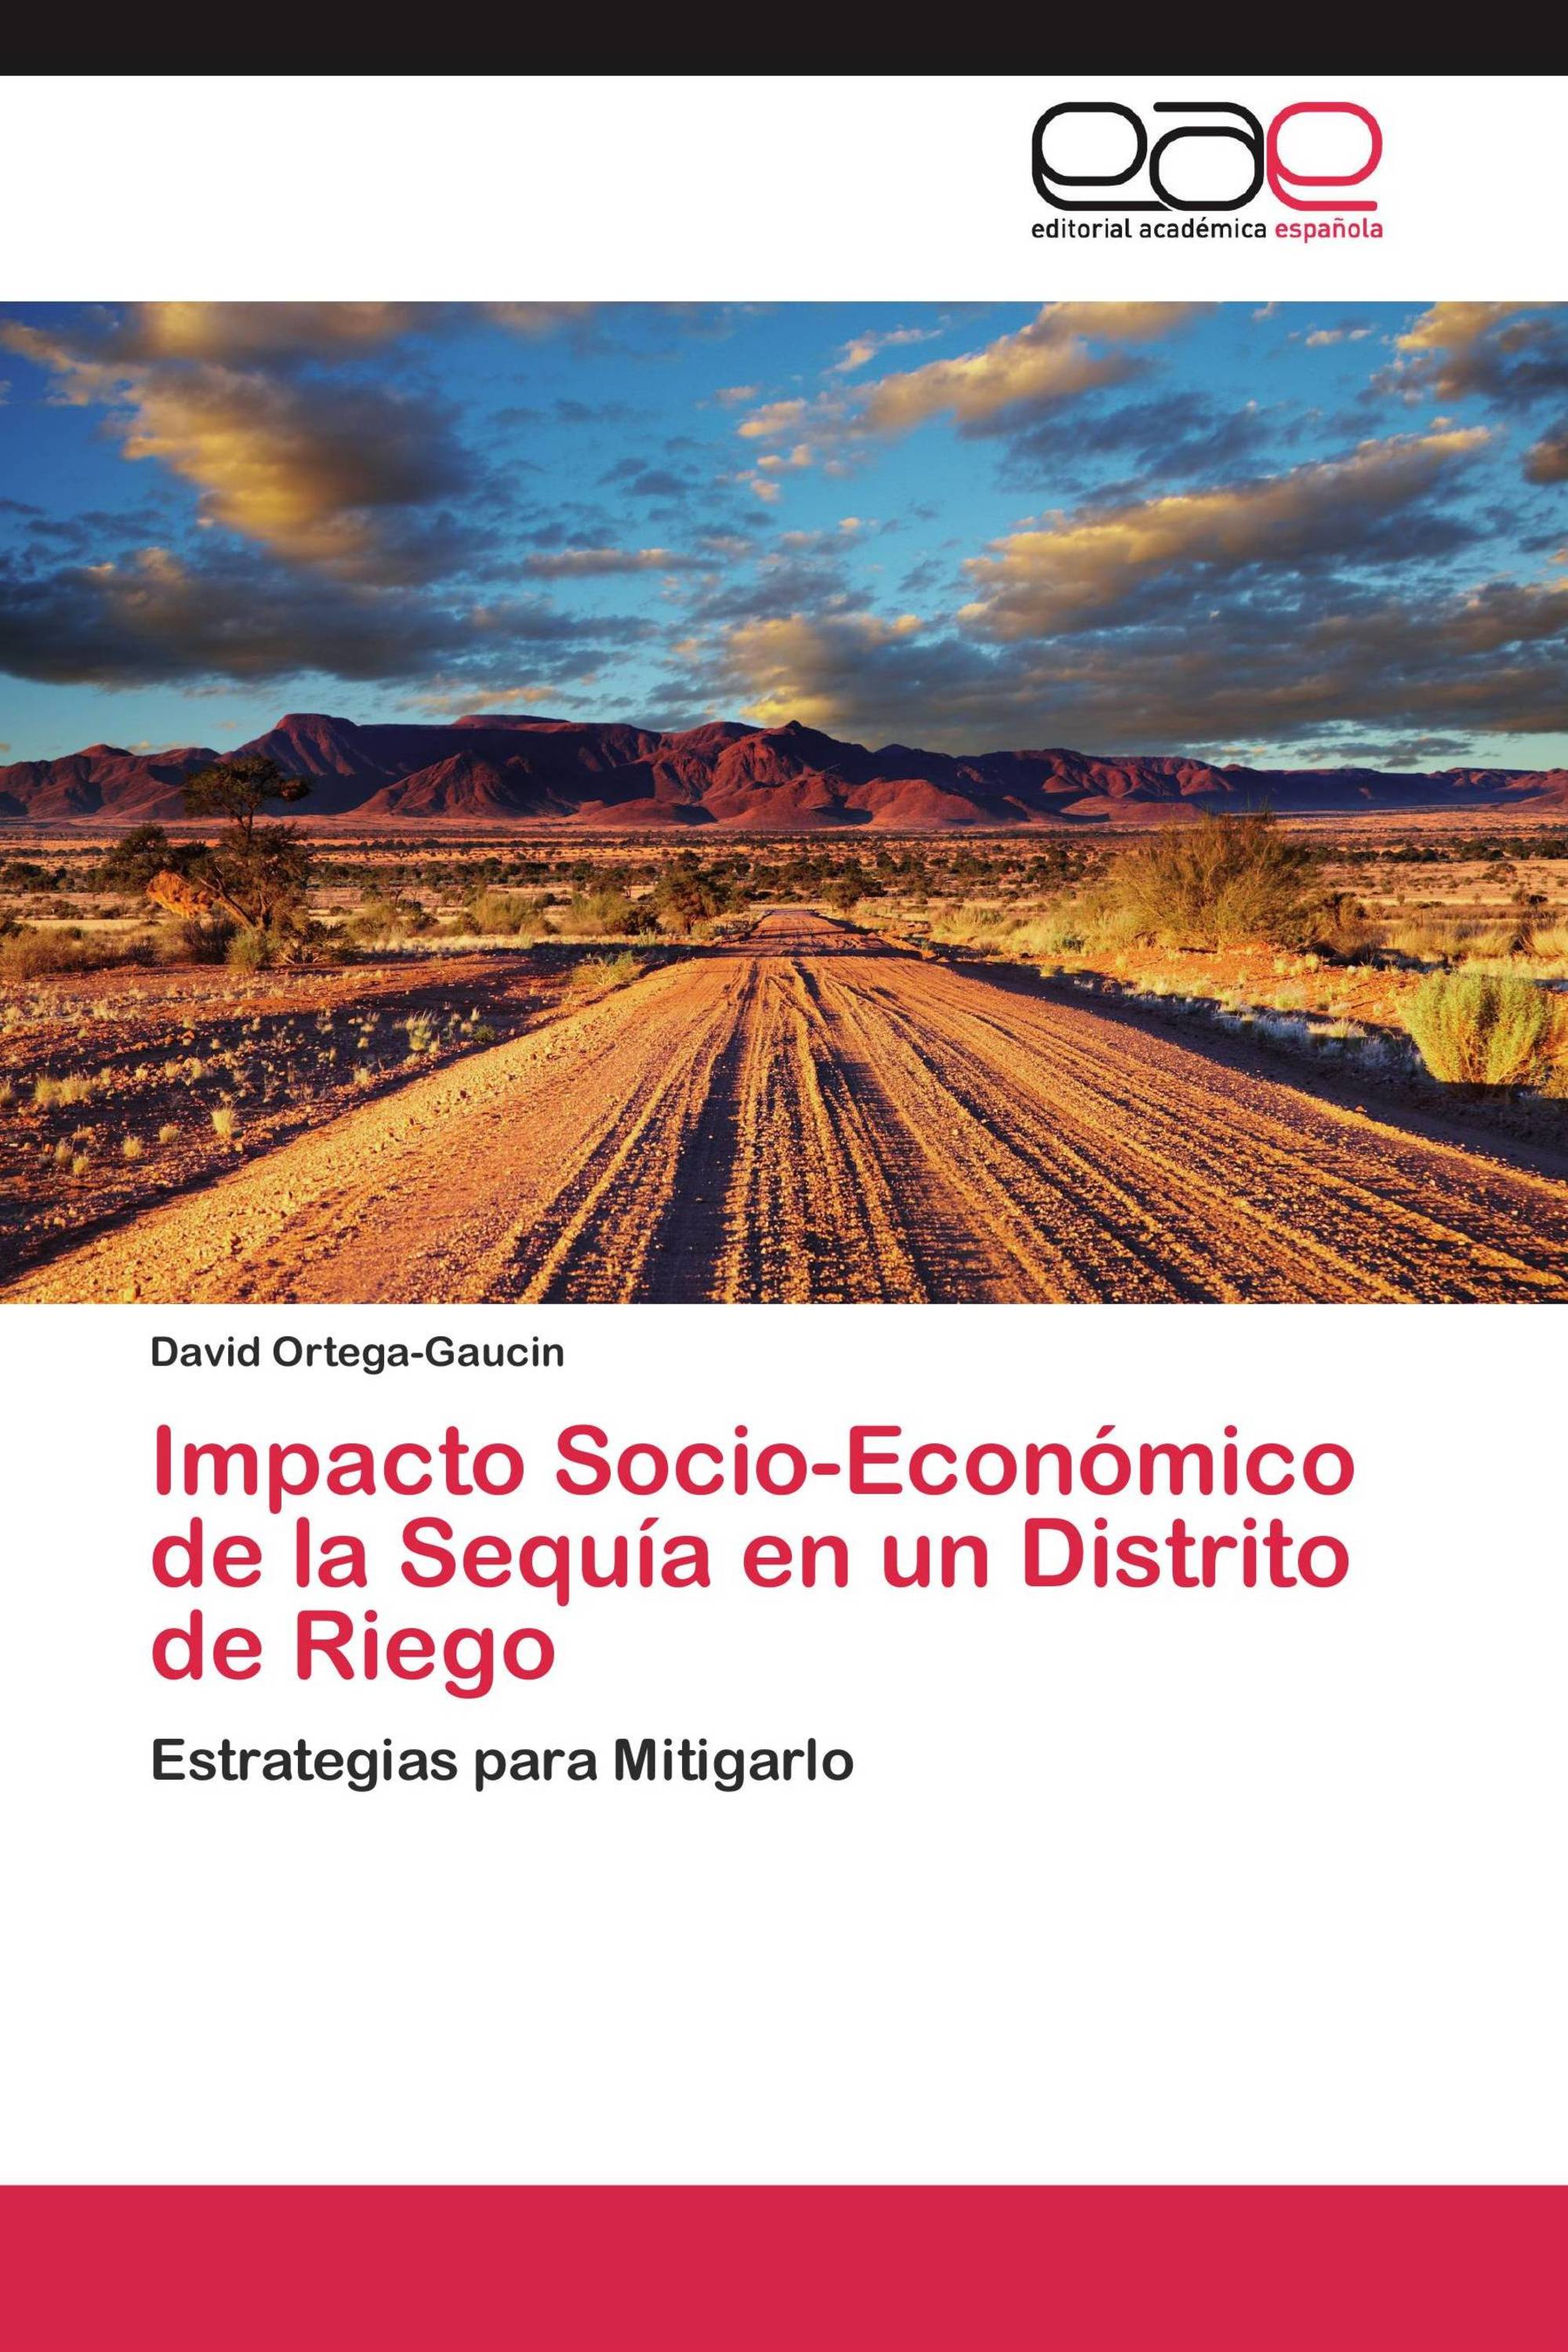 Impacto Socio-Económico de la Sequía en un Distrito de Riego